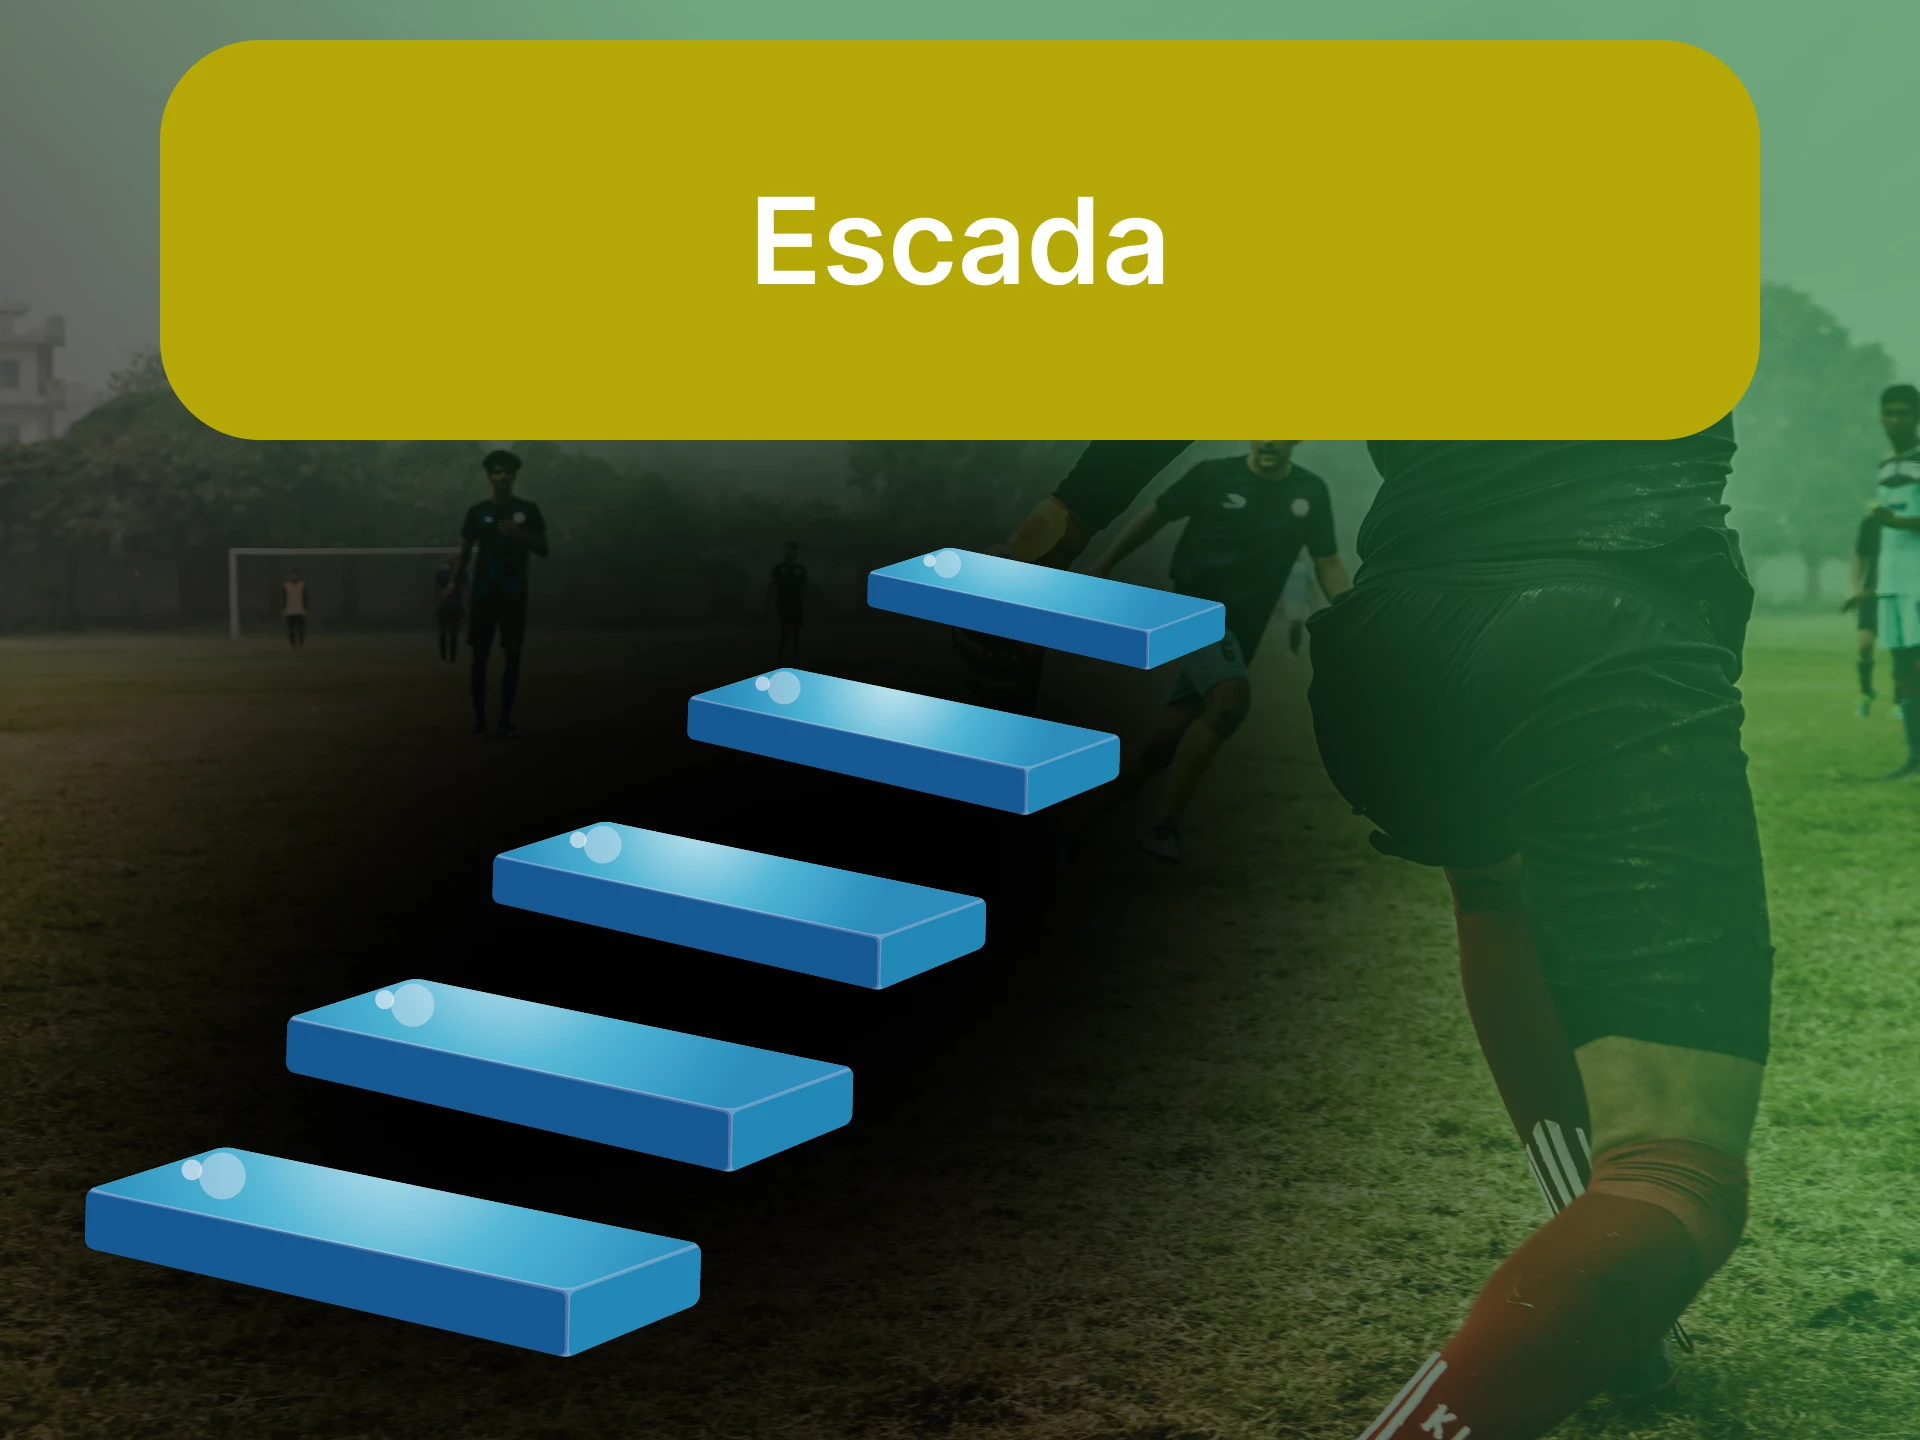 Para apostar no futebol, escolha um dos sistemas de apostas "Escada".